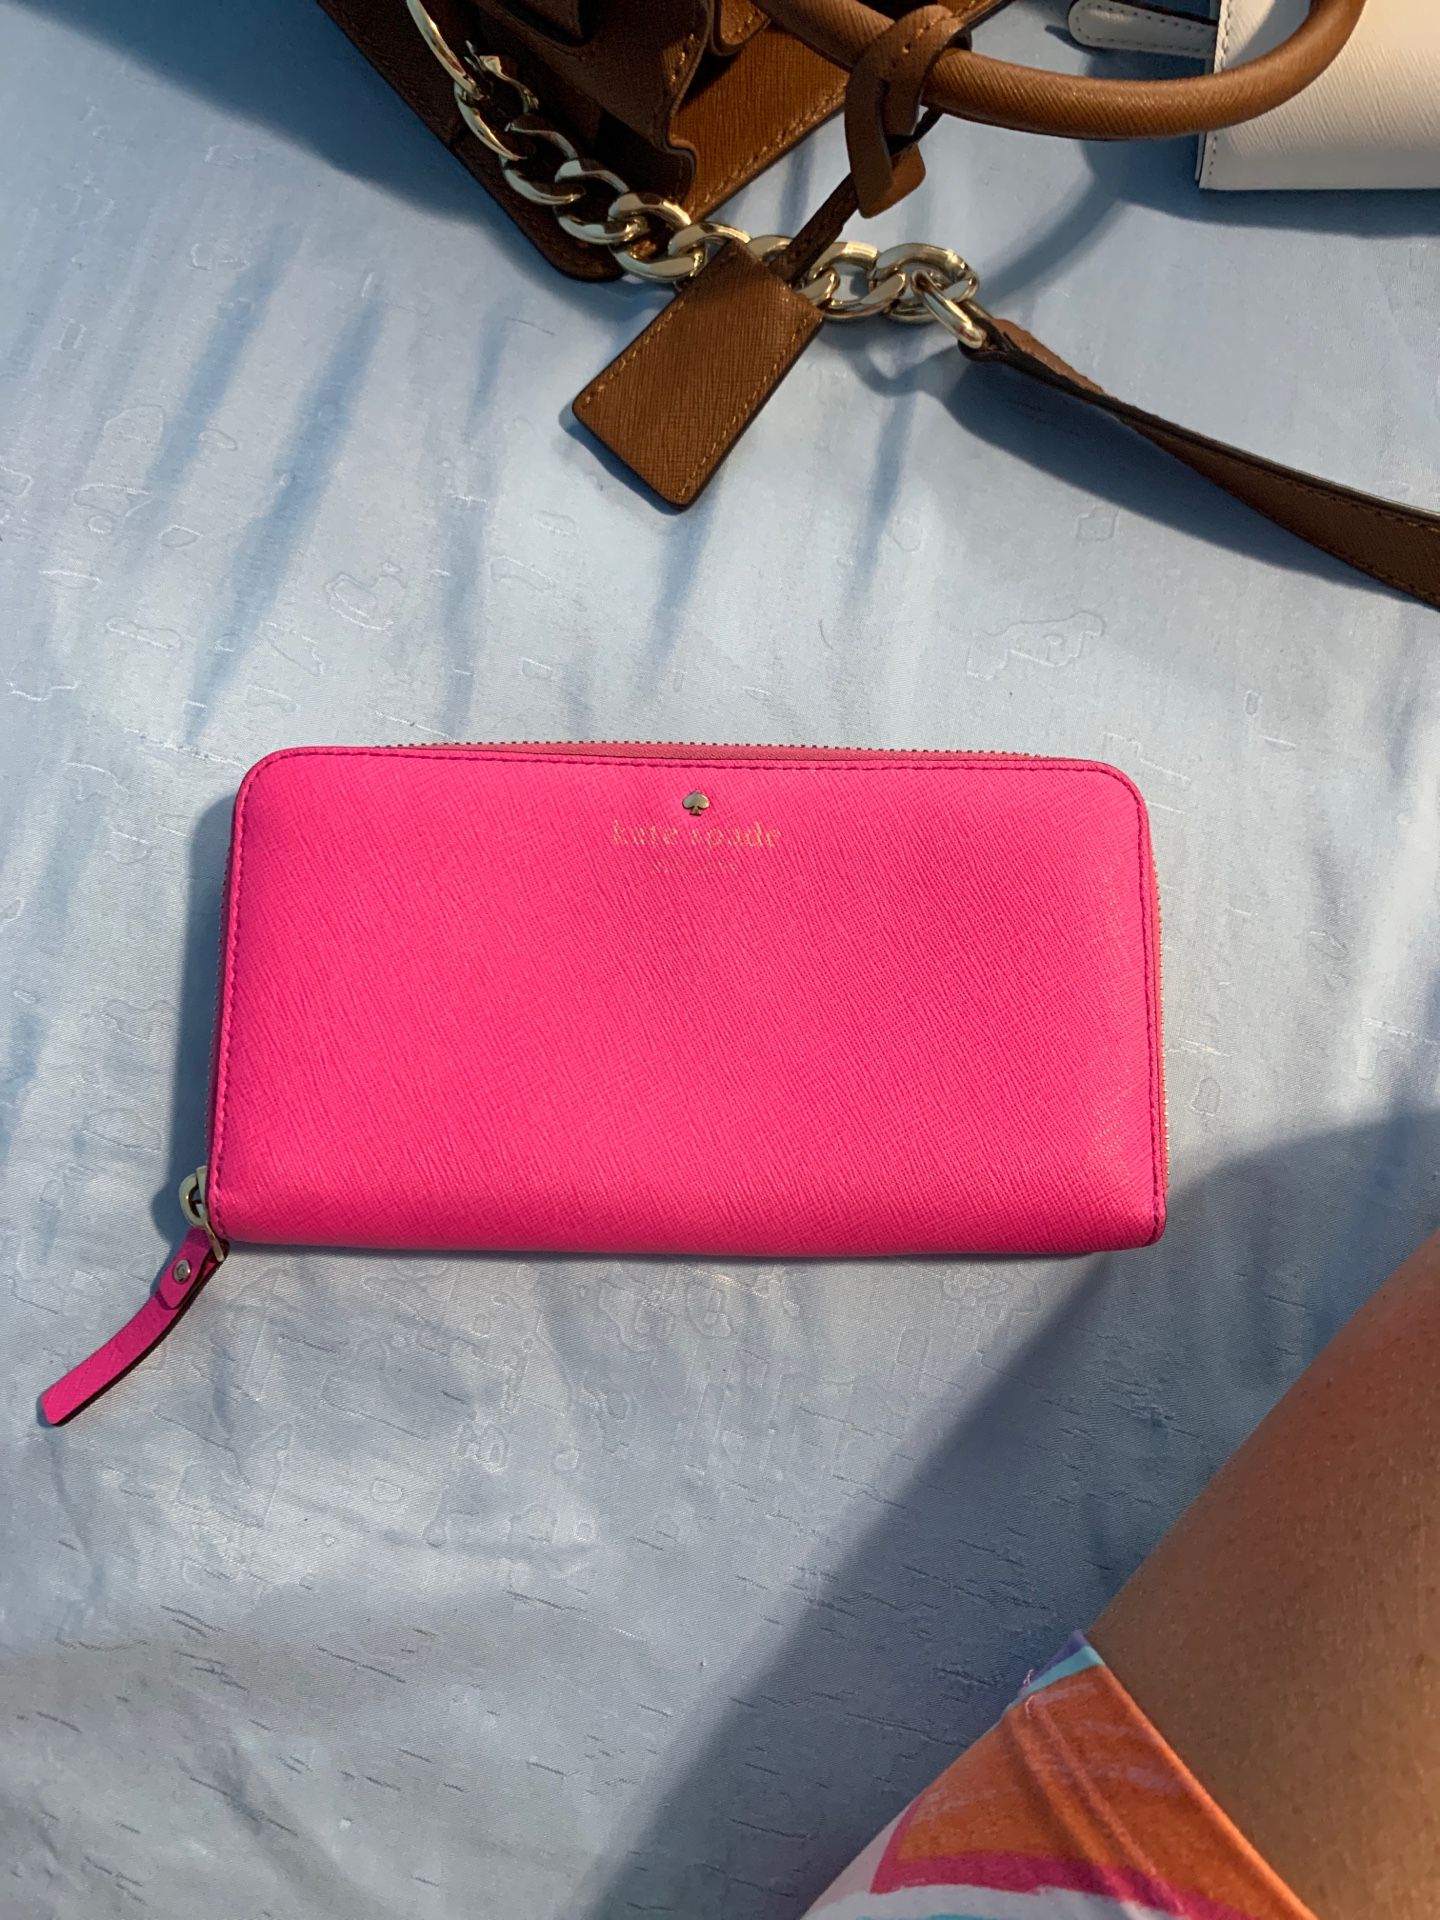 Pink Kate spade wallet